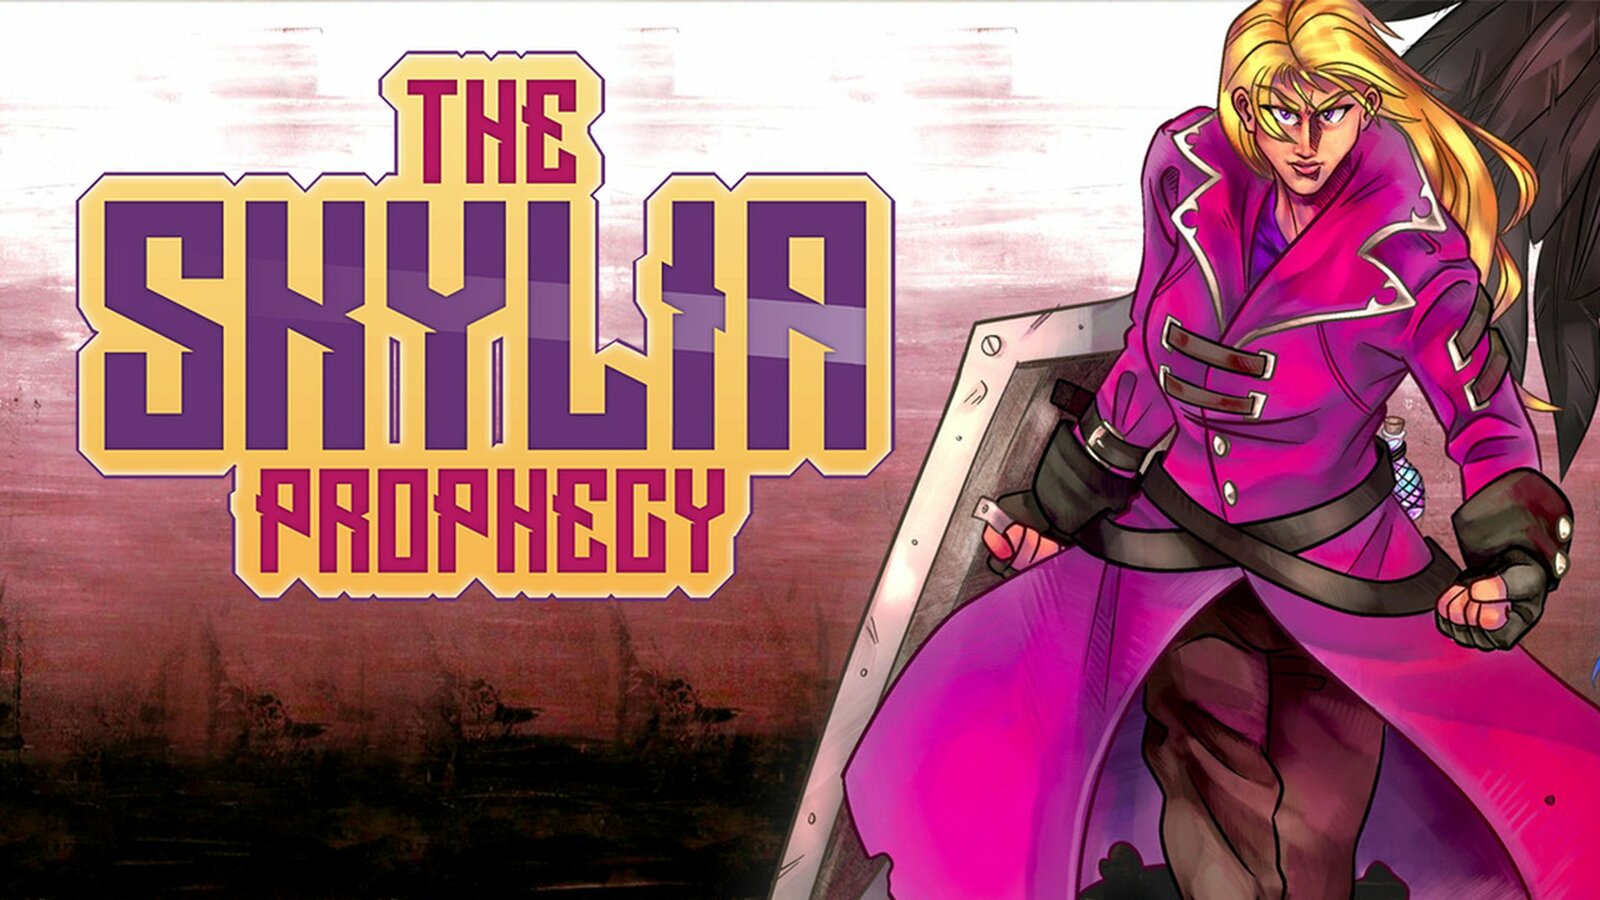 The Skylia Prophecy